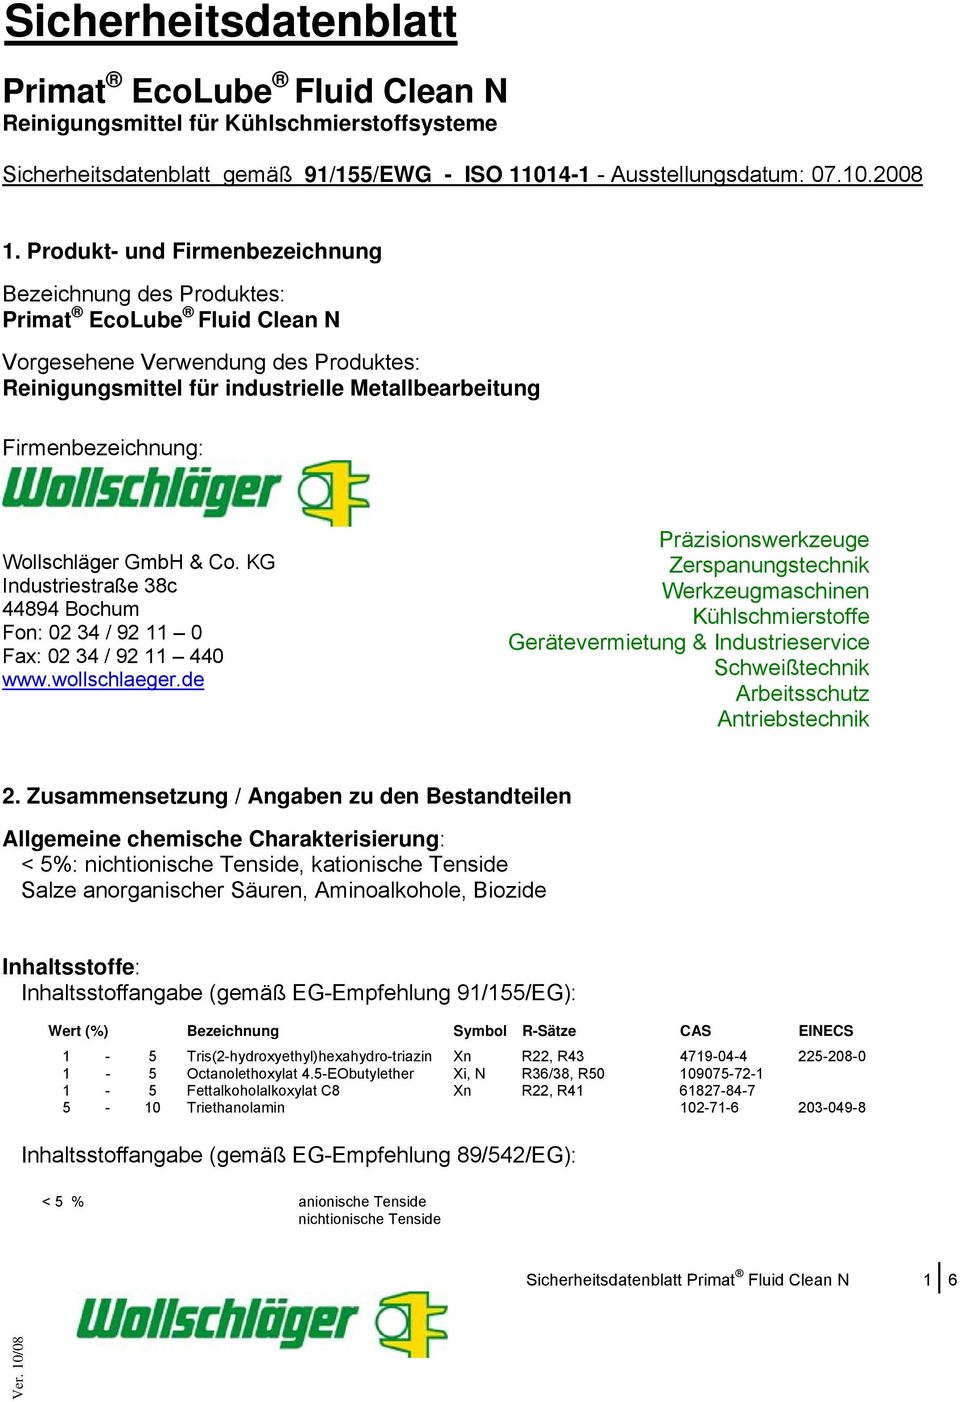 Wollschläger GmbH & Co. KG Industriestraße 38c 44894 Bochum Fon: 02 34 / 92 11 0 Fax: 02 34 / 92 11 440 www.wollschlaeger.